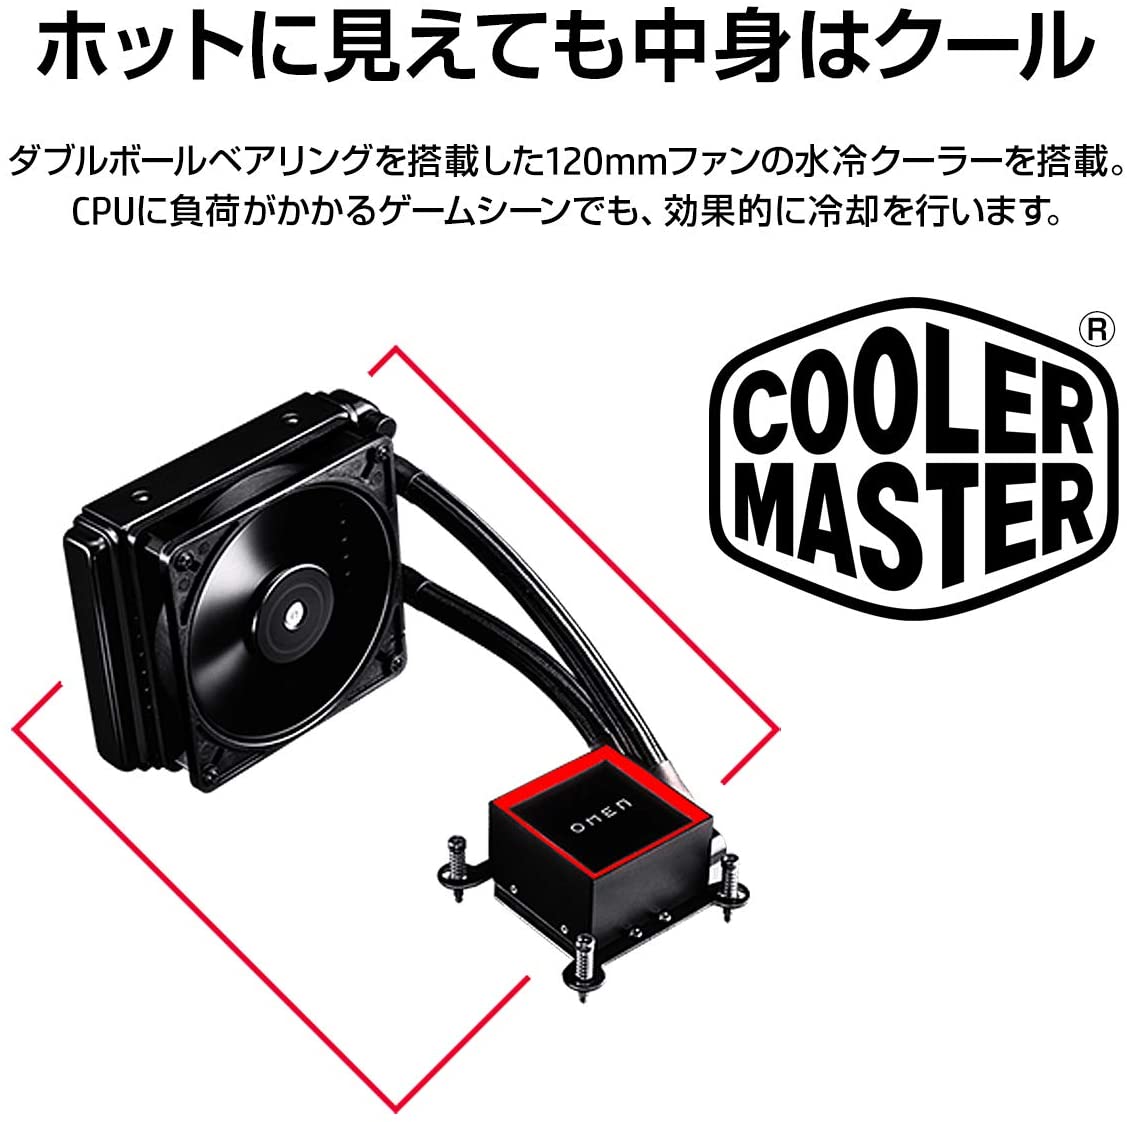 Cooler Master® 製 120mm水冷クーラー